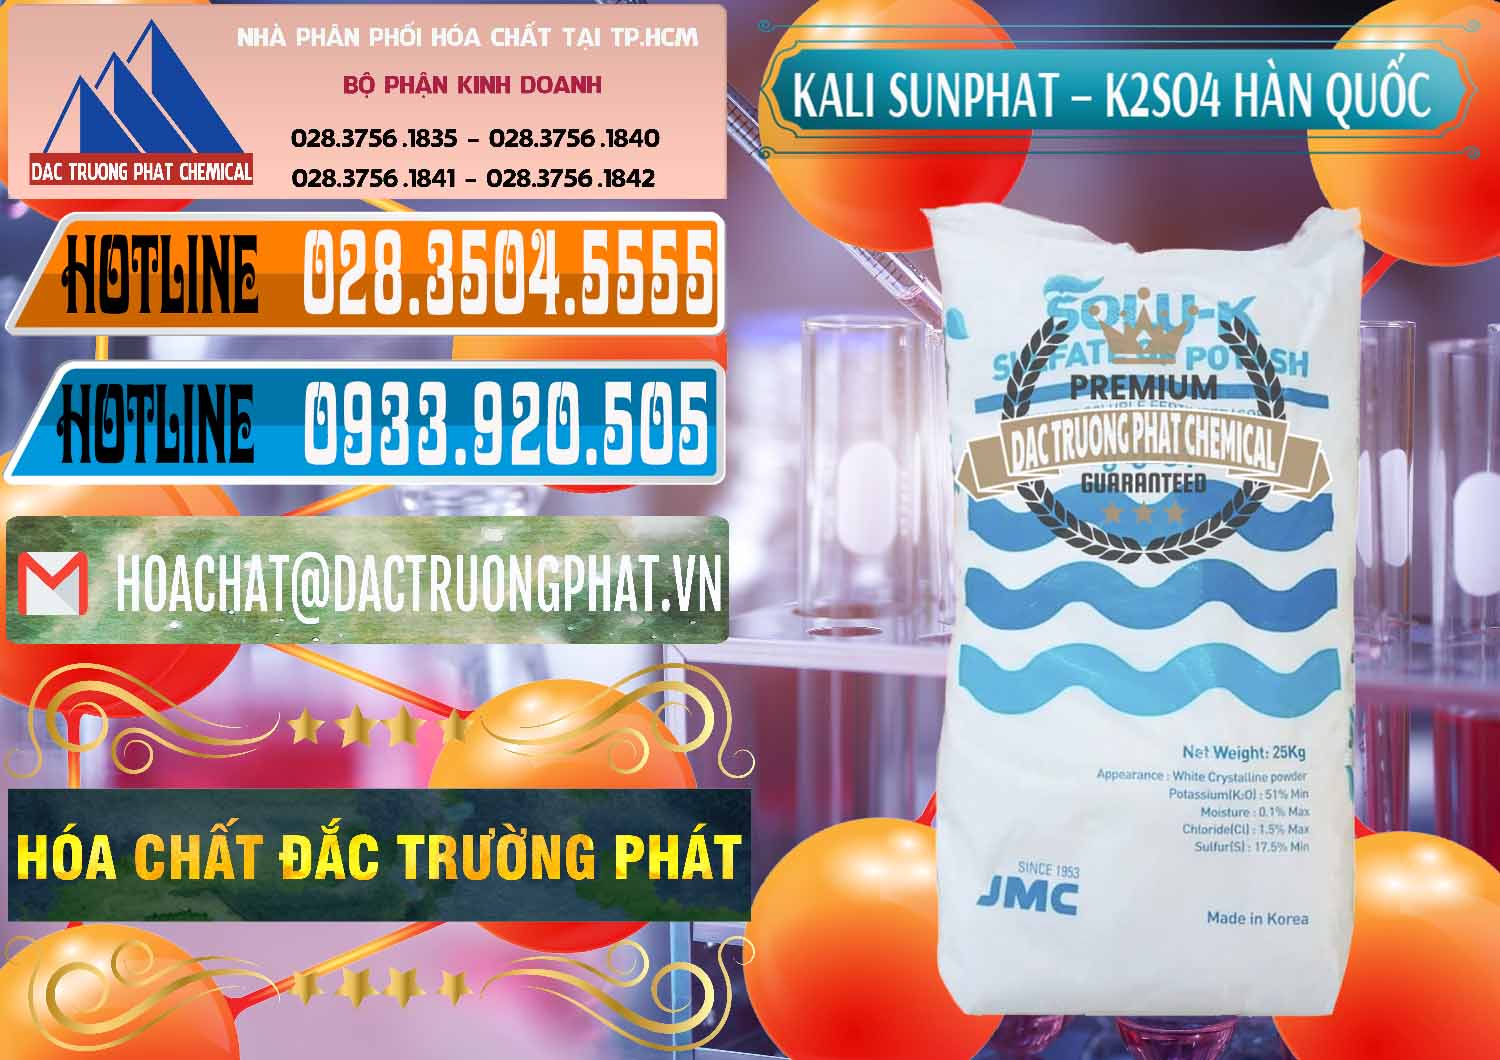 Cty chuyên kinh doanh và bán Kali Sunphat – K2SO4 Hàn Quốc Korea - 0410 - Nhà nhập khẩu & cung cấp hóa chất tại TP.HCM - stmp.net